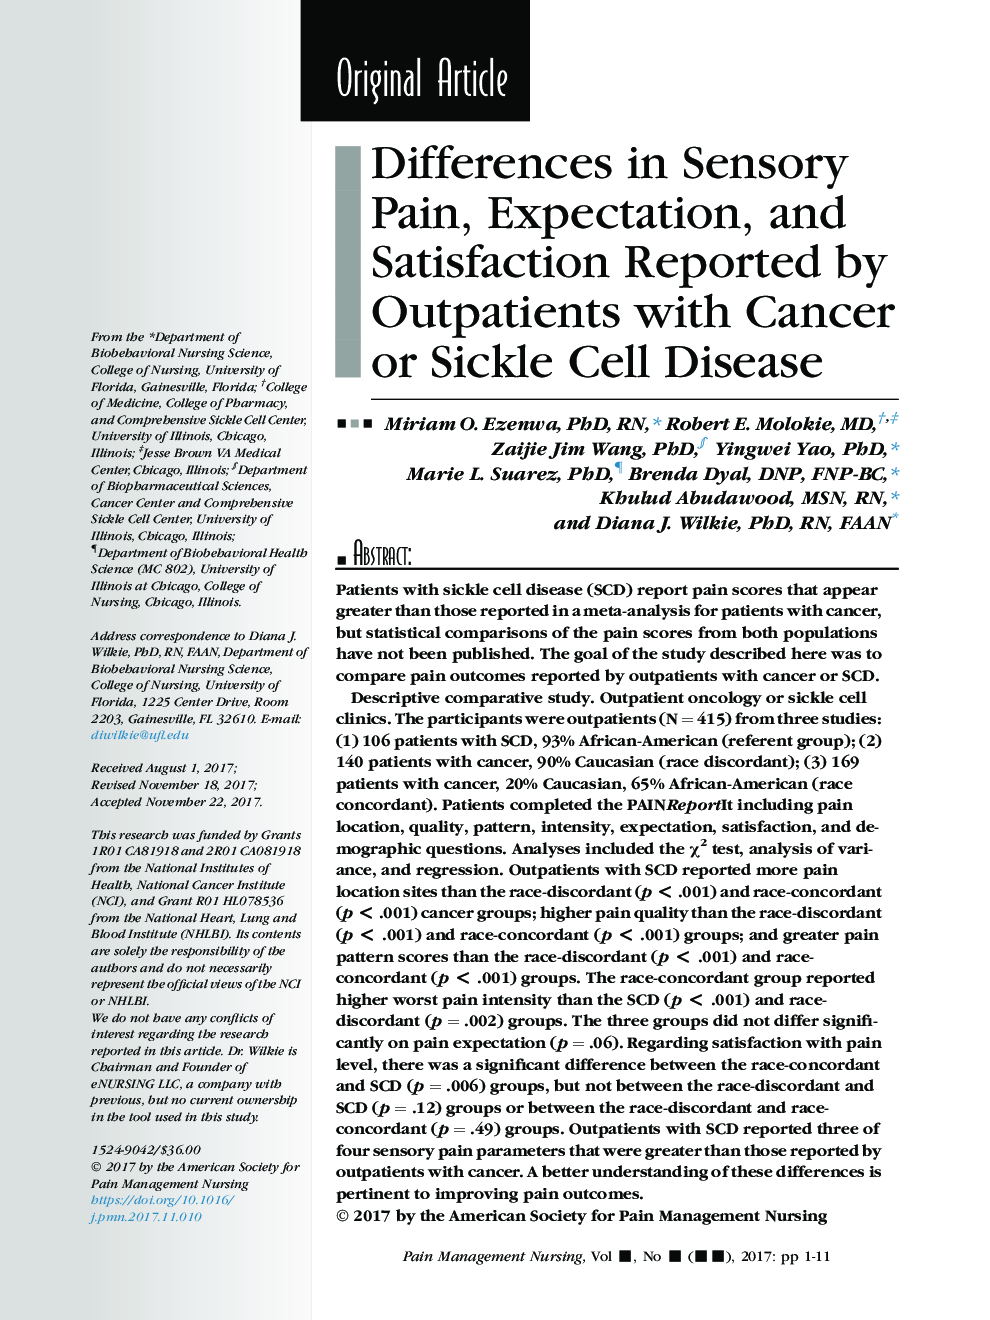 تفاوت های درد حسی، انتظارات و رضایت بیماران سرپایی با بیماری سرطان یا سلول های سرطانی 